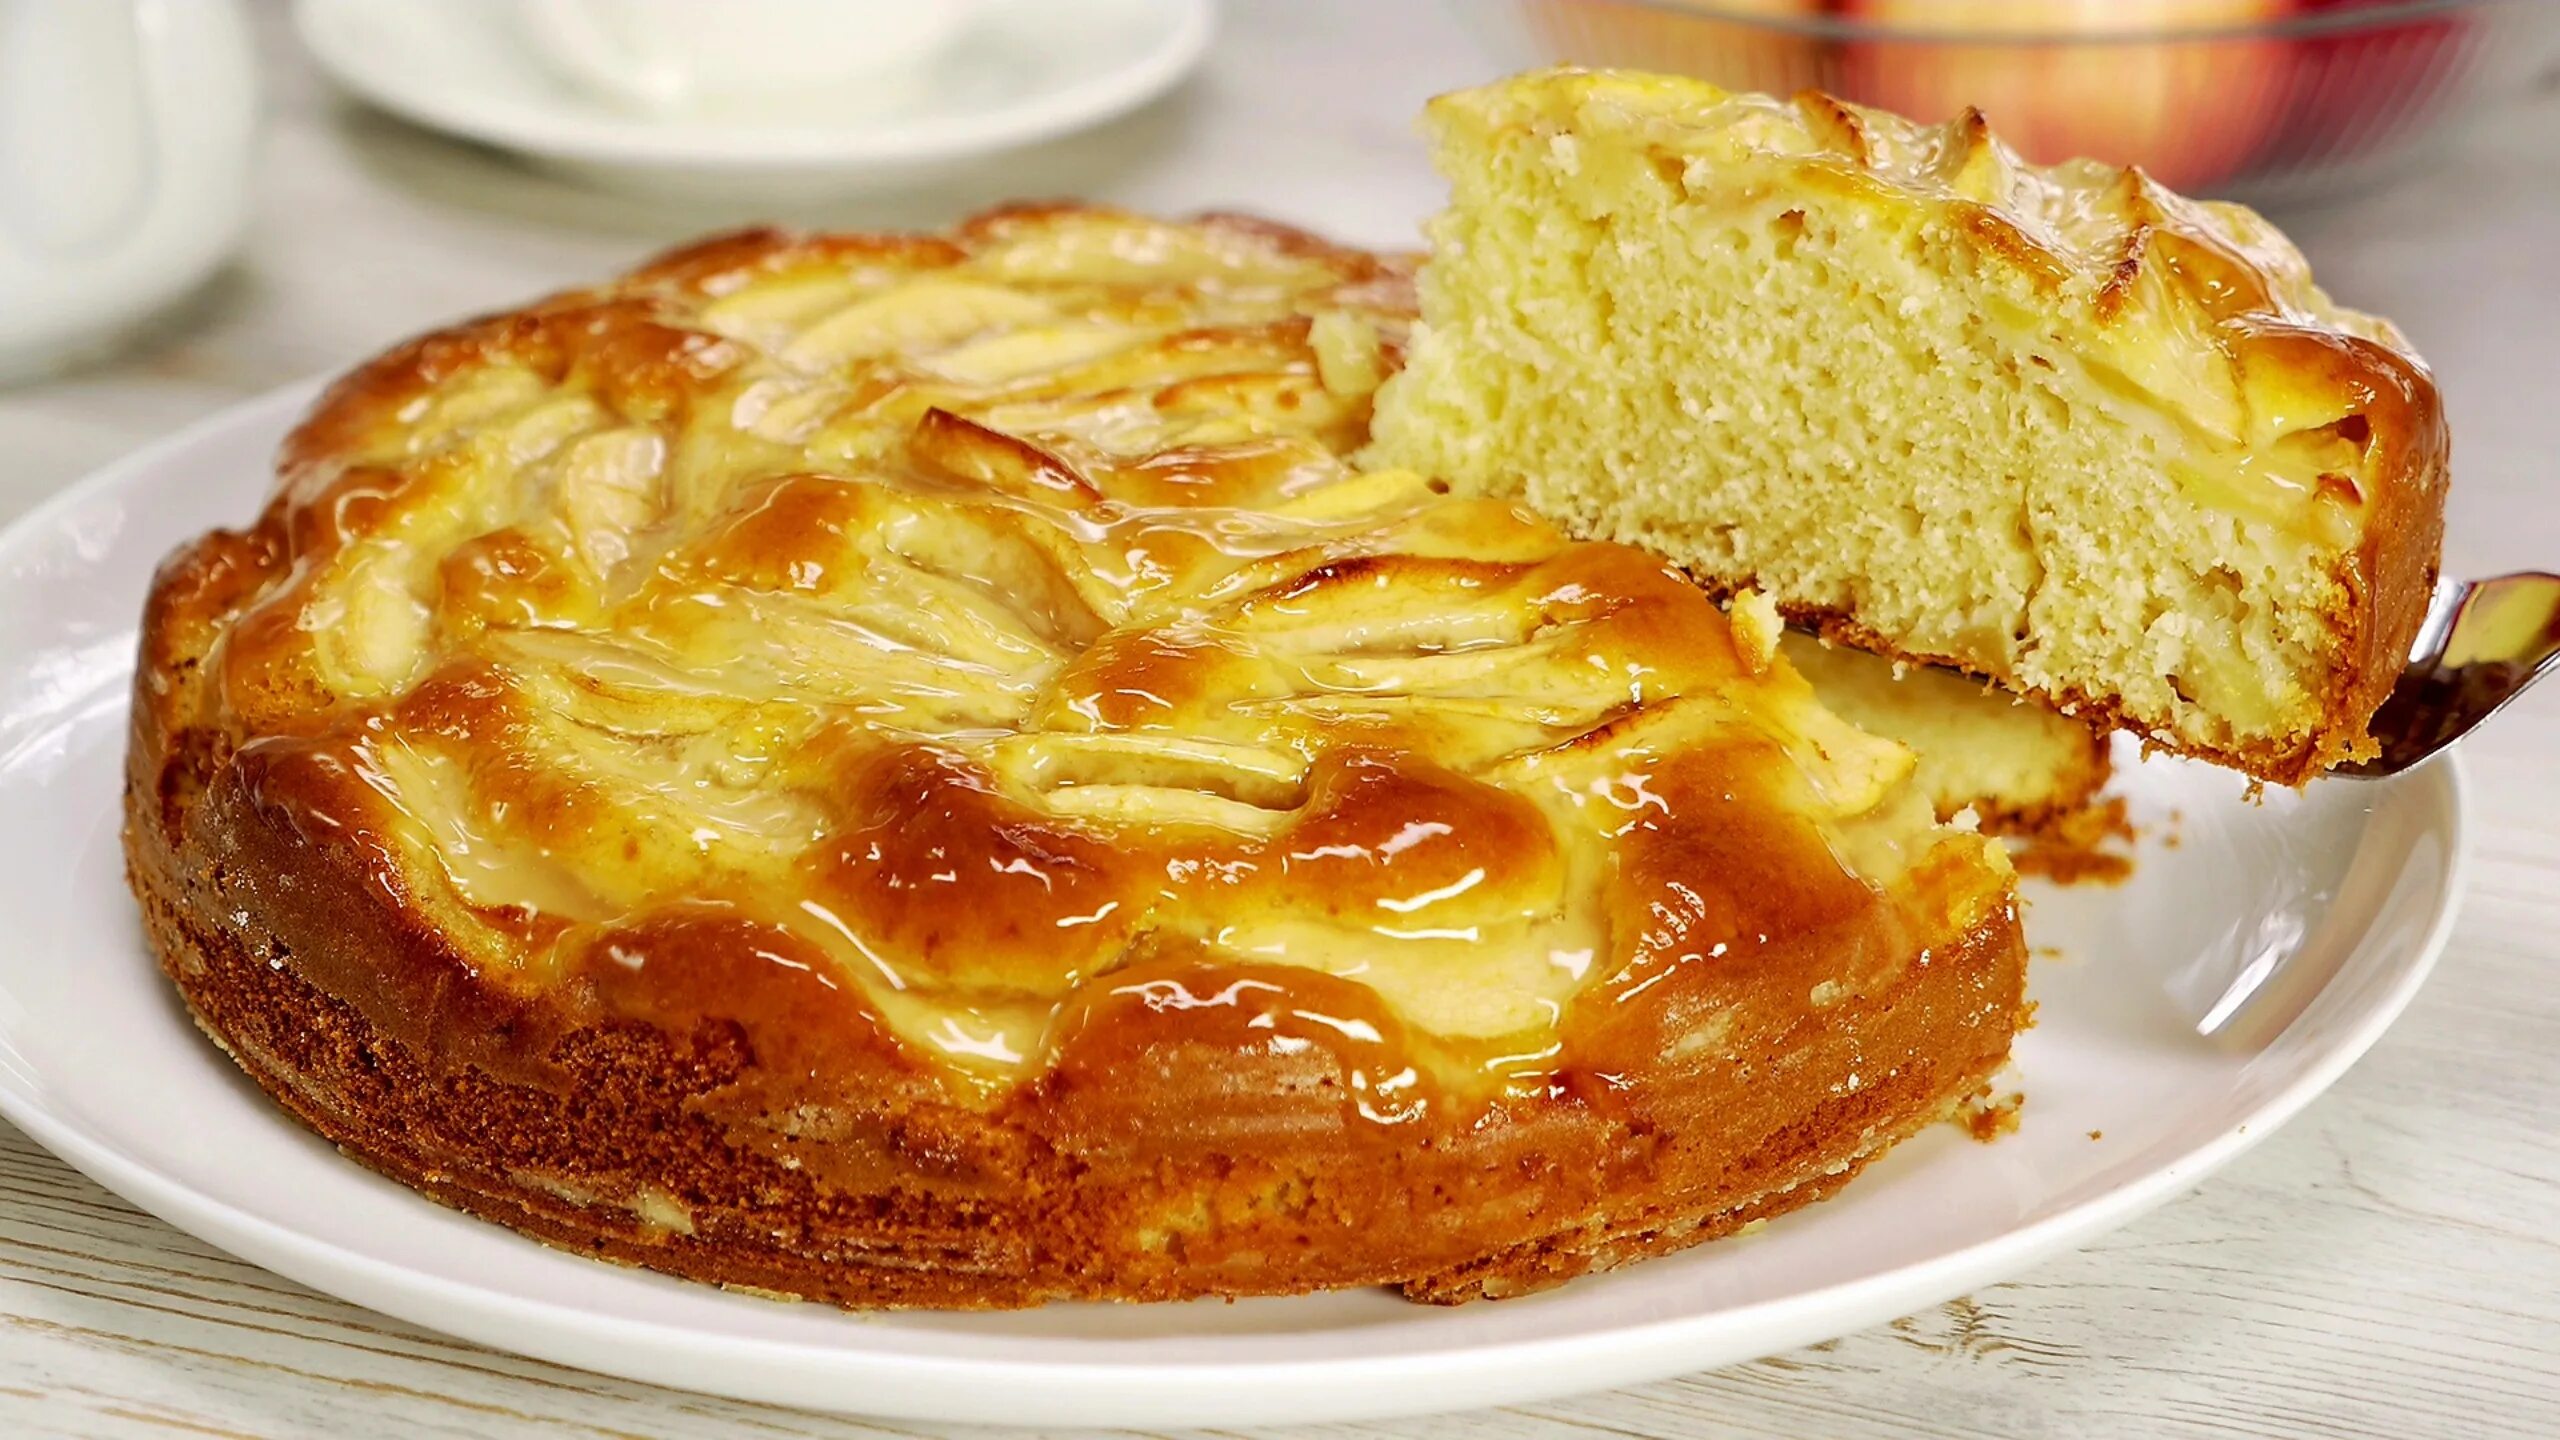 Пирог с маслом и сахаром. Шарлотка с яблоками. Бисквит для шарлотки. Творожный пирог с яблоками.